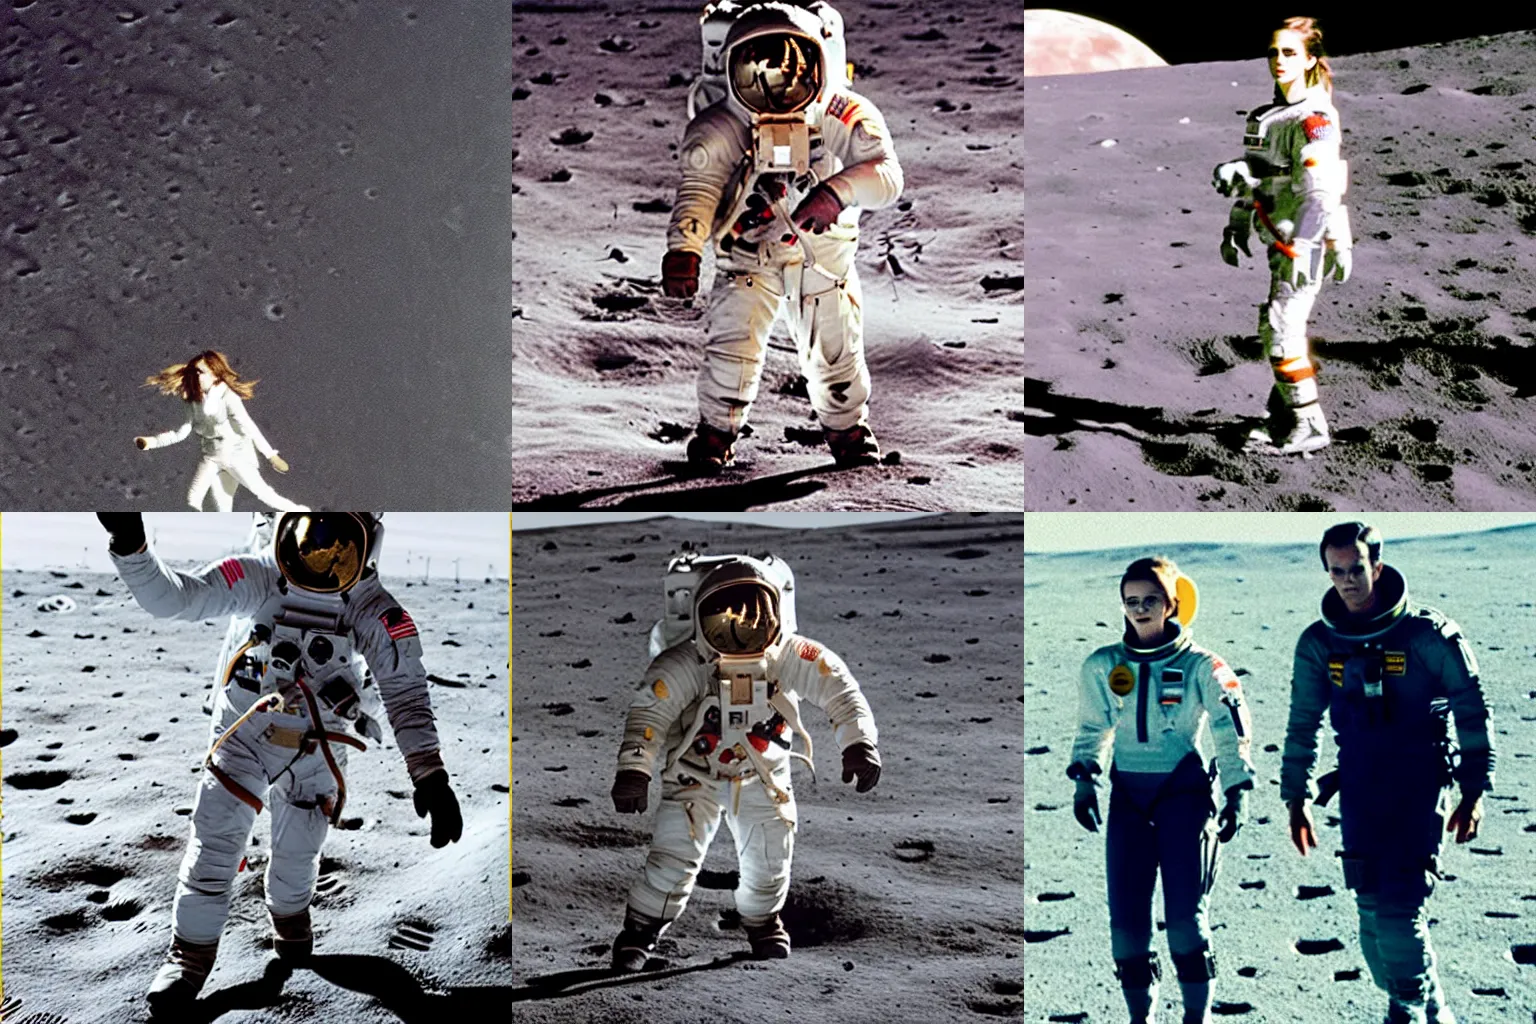 Prompt: Emma Watson walking on the moon in zero gravity